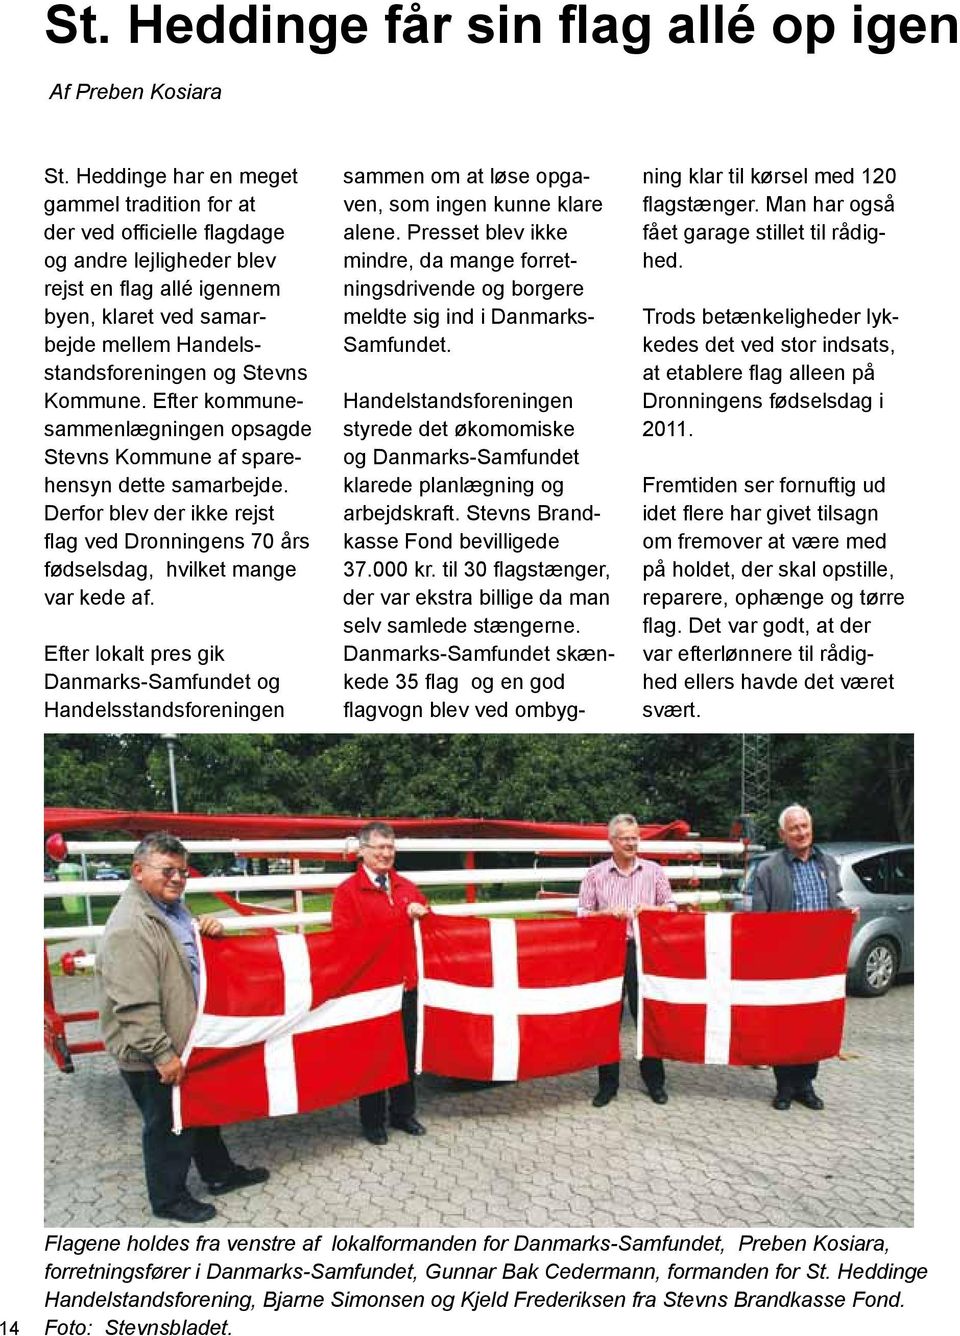 Kommune. Efter kommunesammenlægningen opsagde Stevns Kommune af sparehensyn dette samarbejde. Derfor blev der ikke rejst flag ved Dronningens 70 års fødselsdag, hvilket mange var kede af.